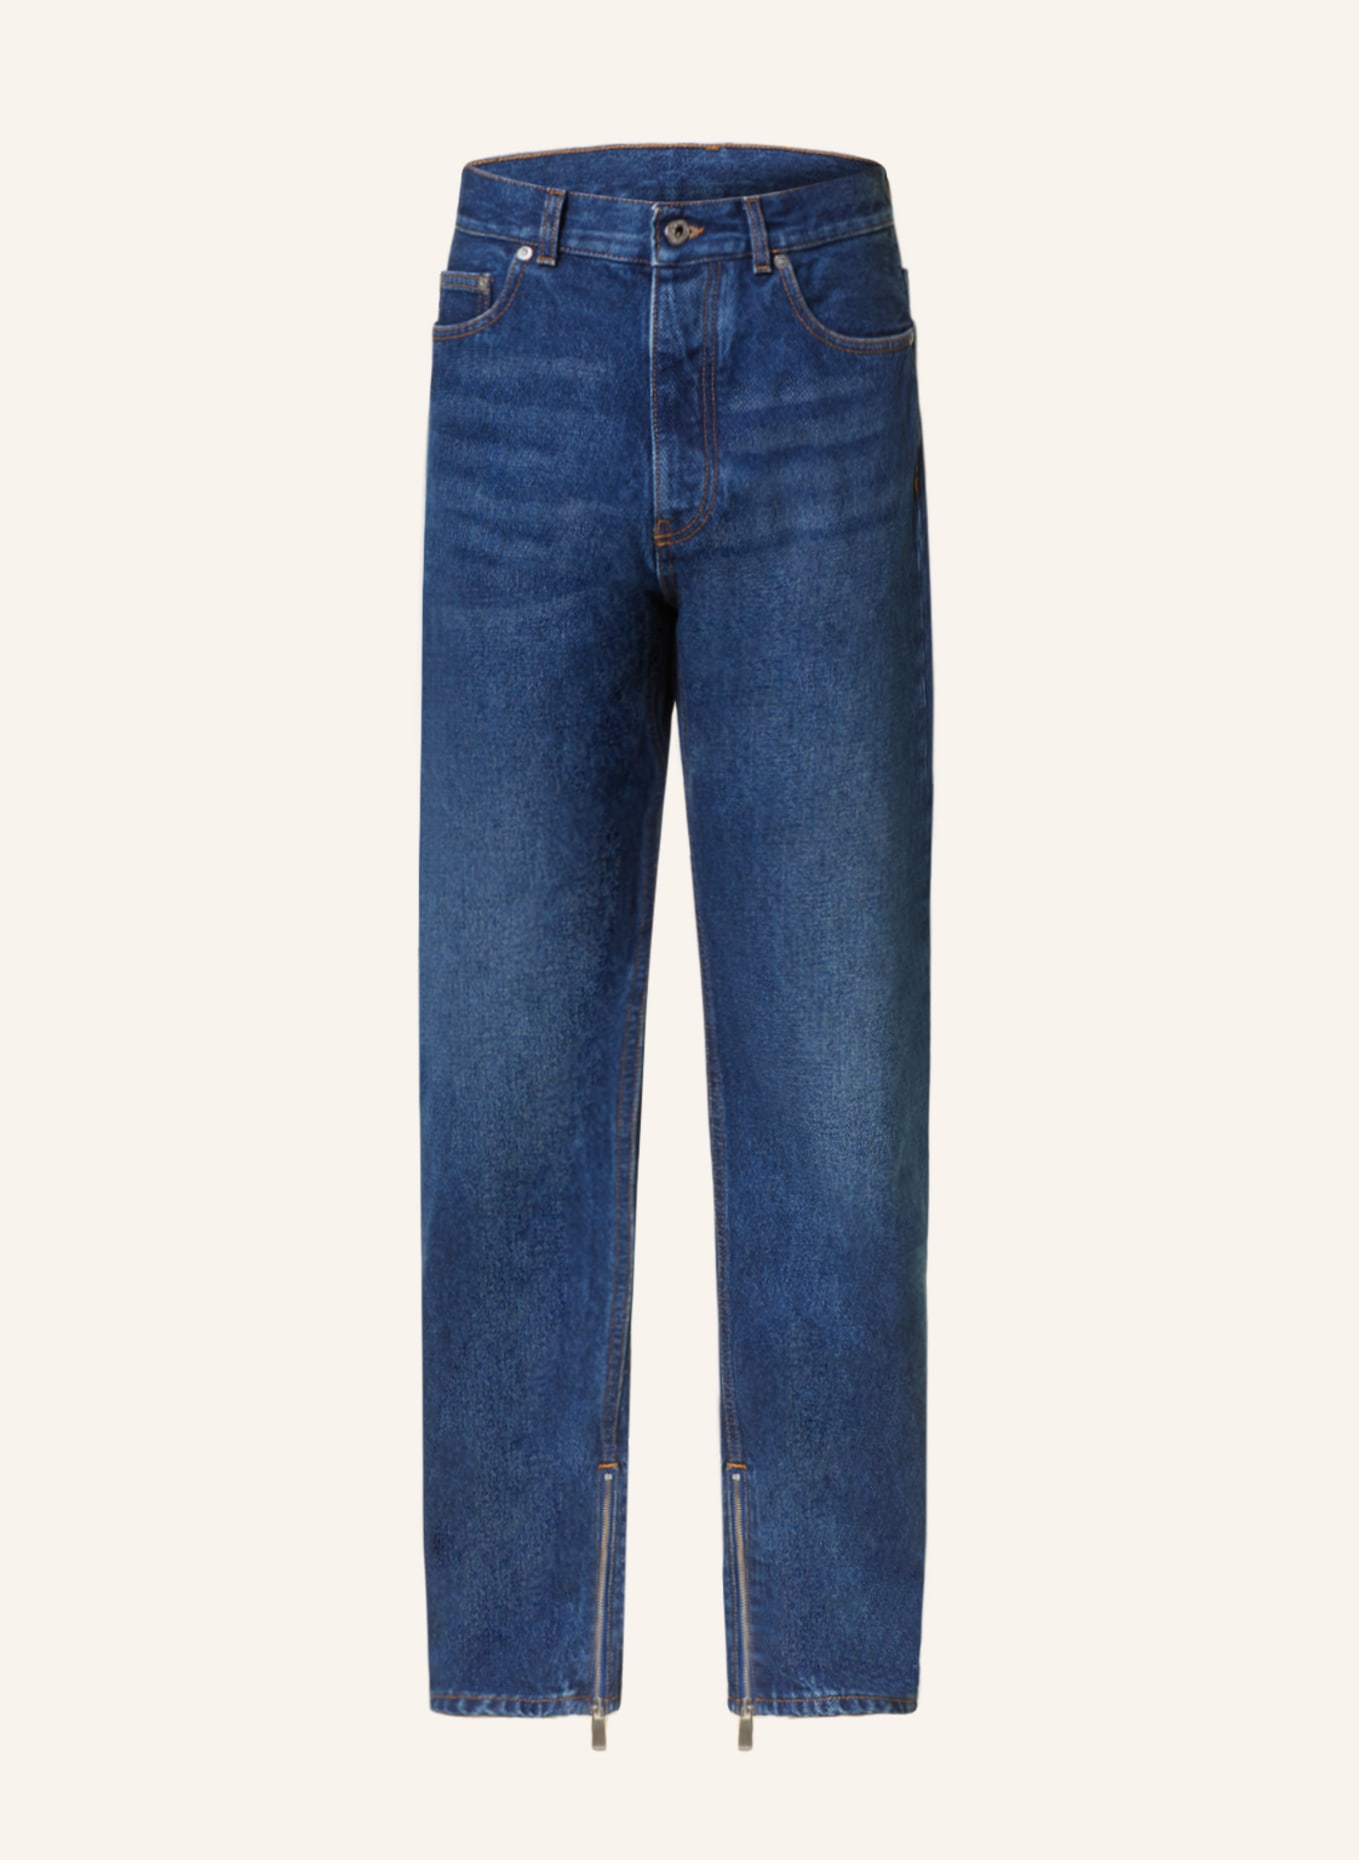 Off-White Jeans regular fit, Color: 4400 medium blue (Image 1)